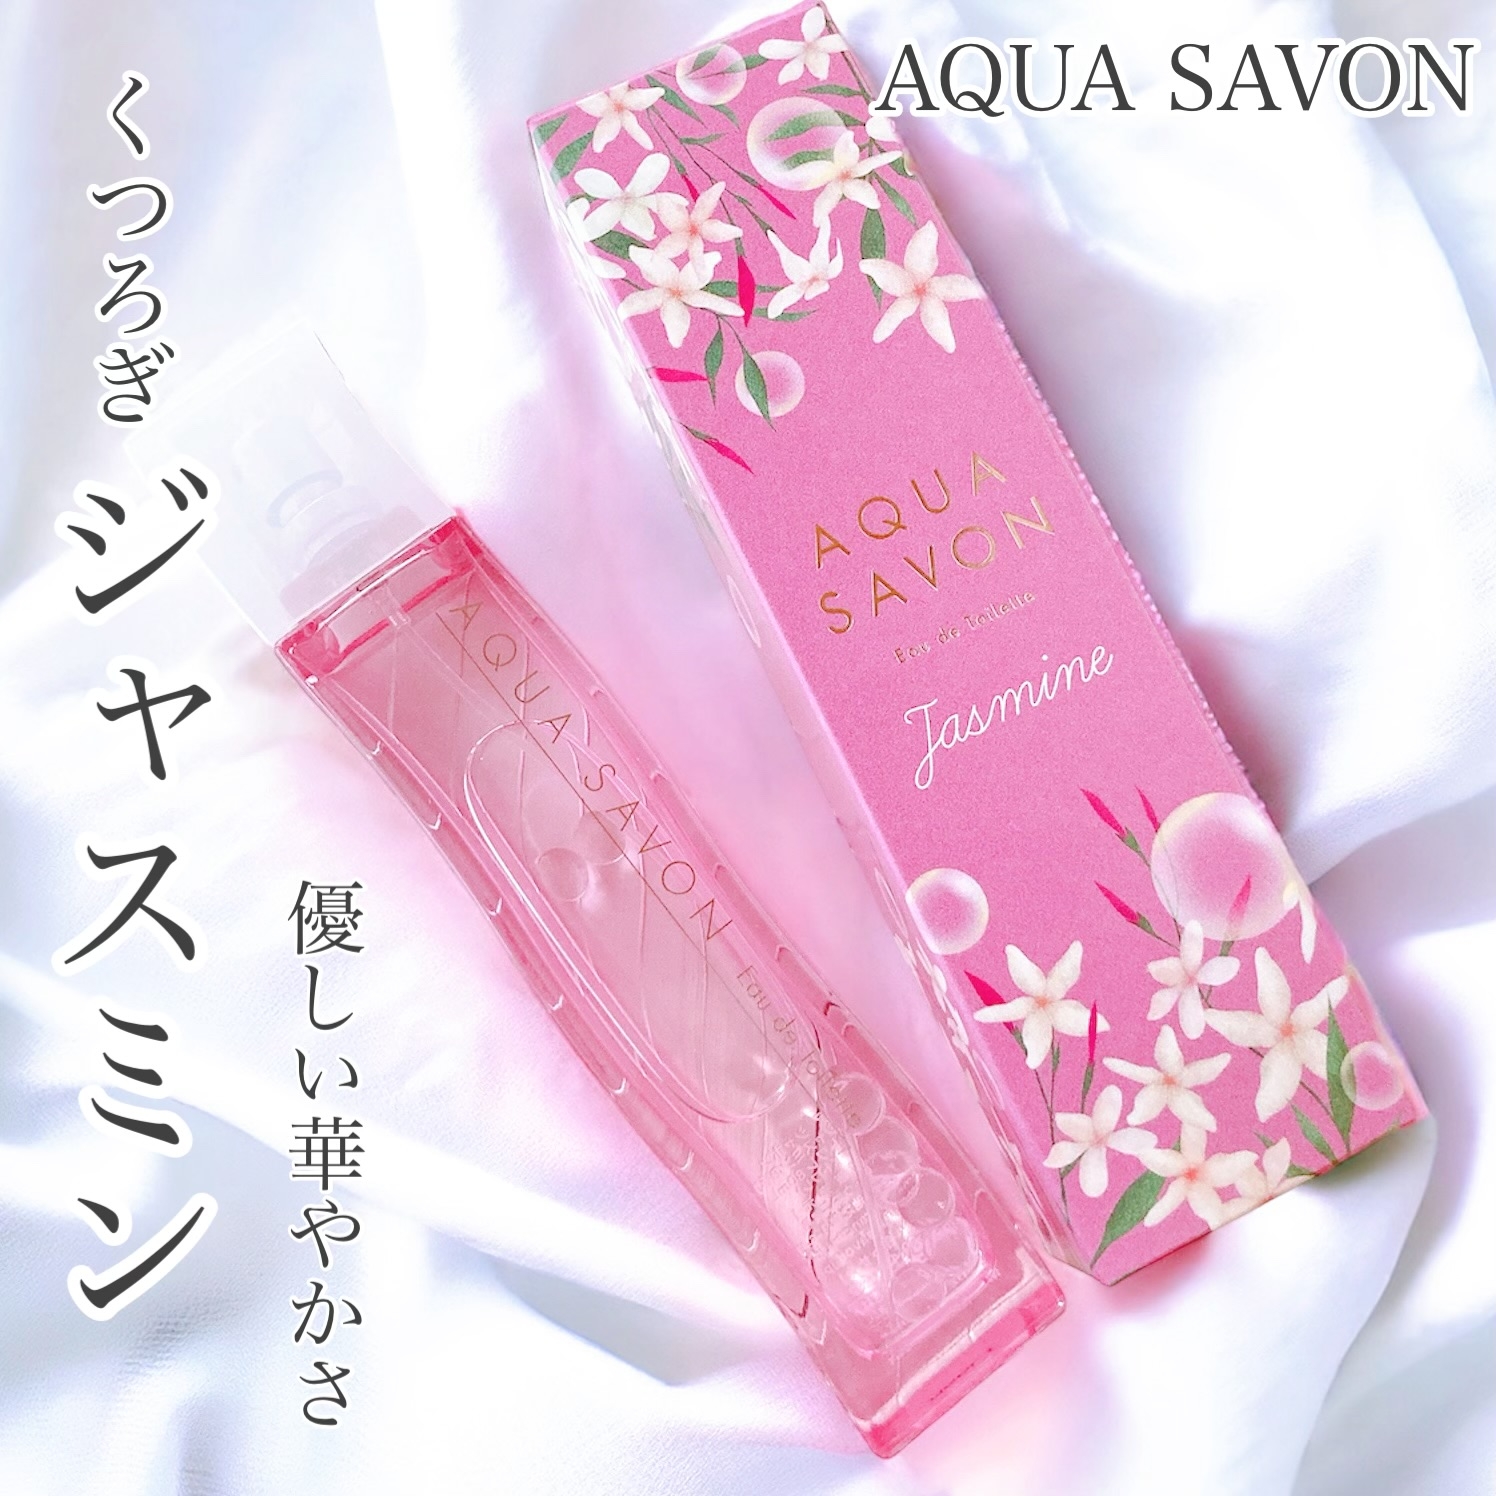 Aqua Savon くつろぎジャスミンの香り オードトワレの良い点・メリットに関するおかんさんの口コミ画像1